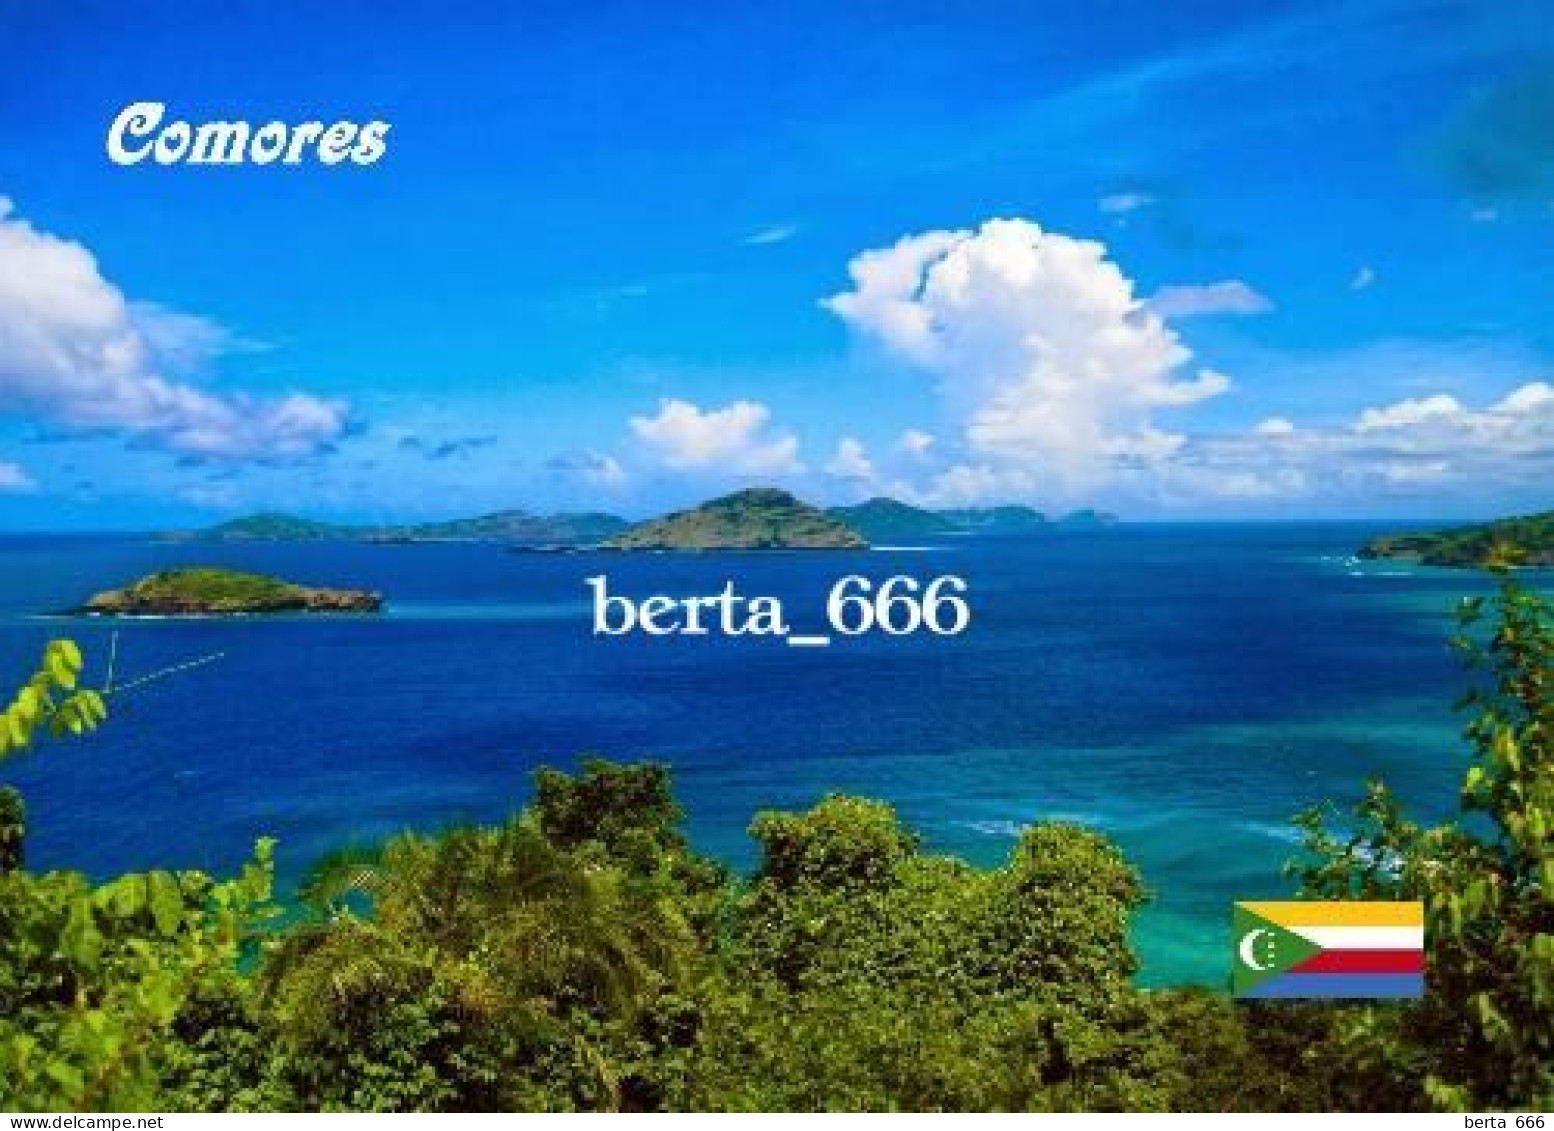 Comoros Islands Ocean View Comores New Postcard - Komoren